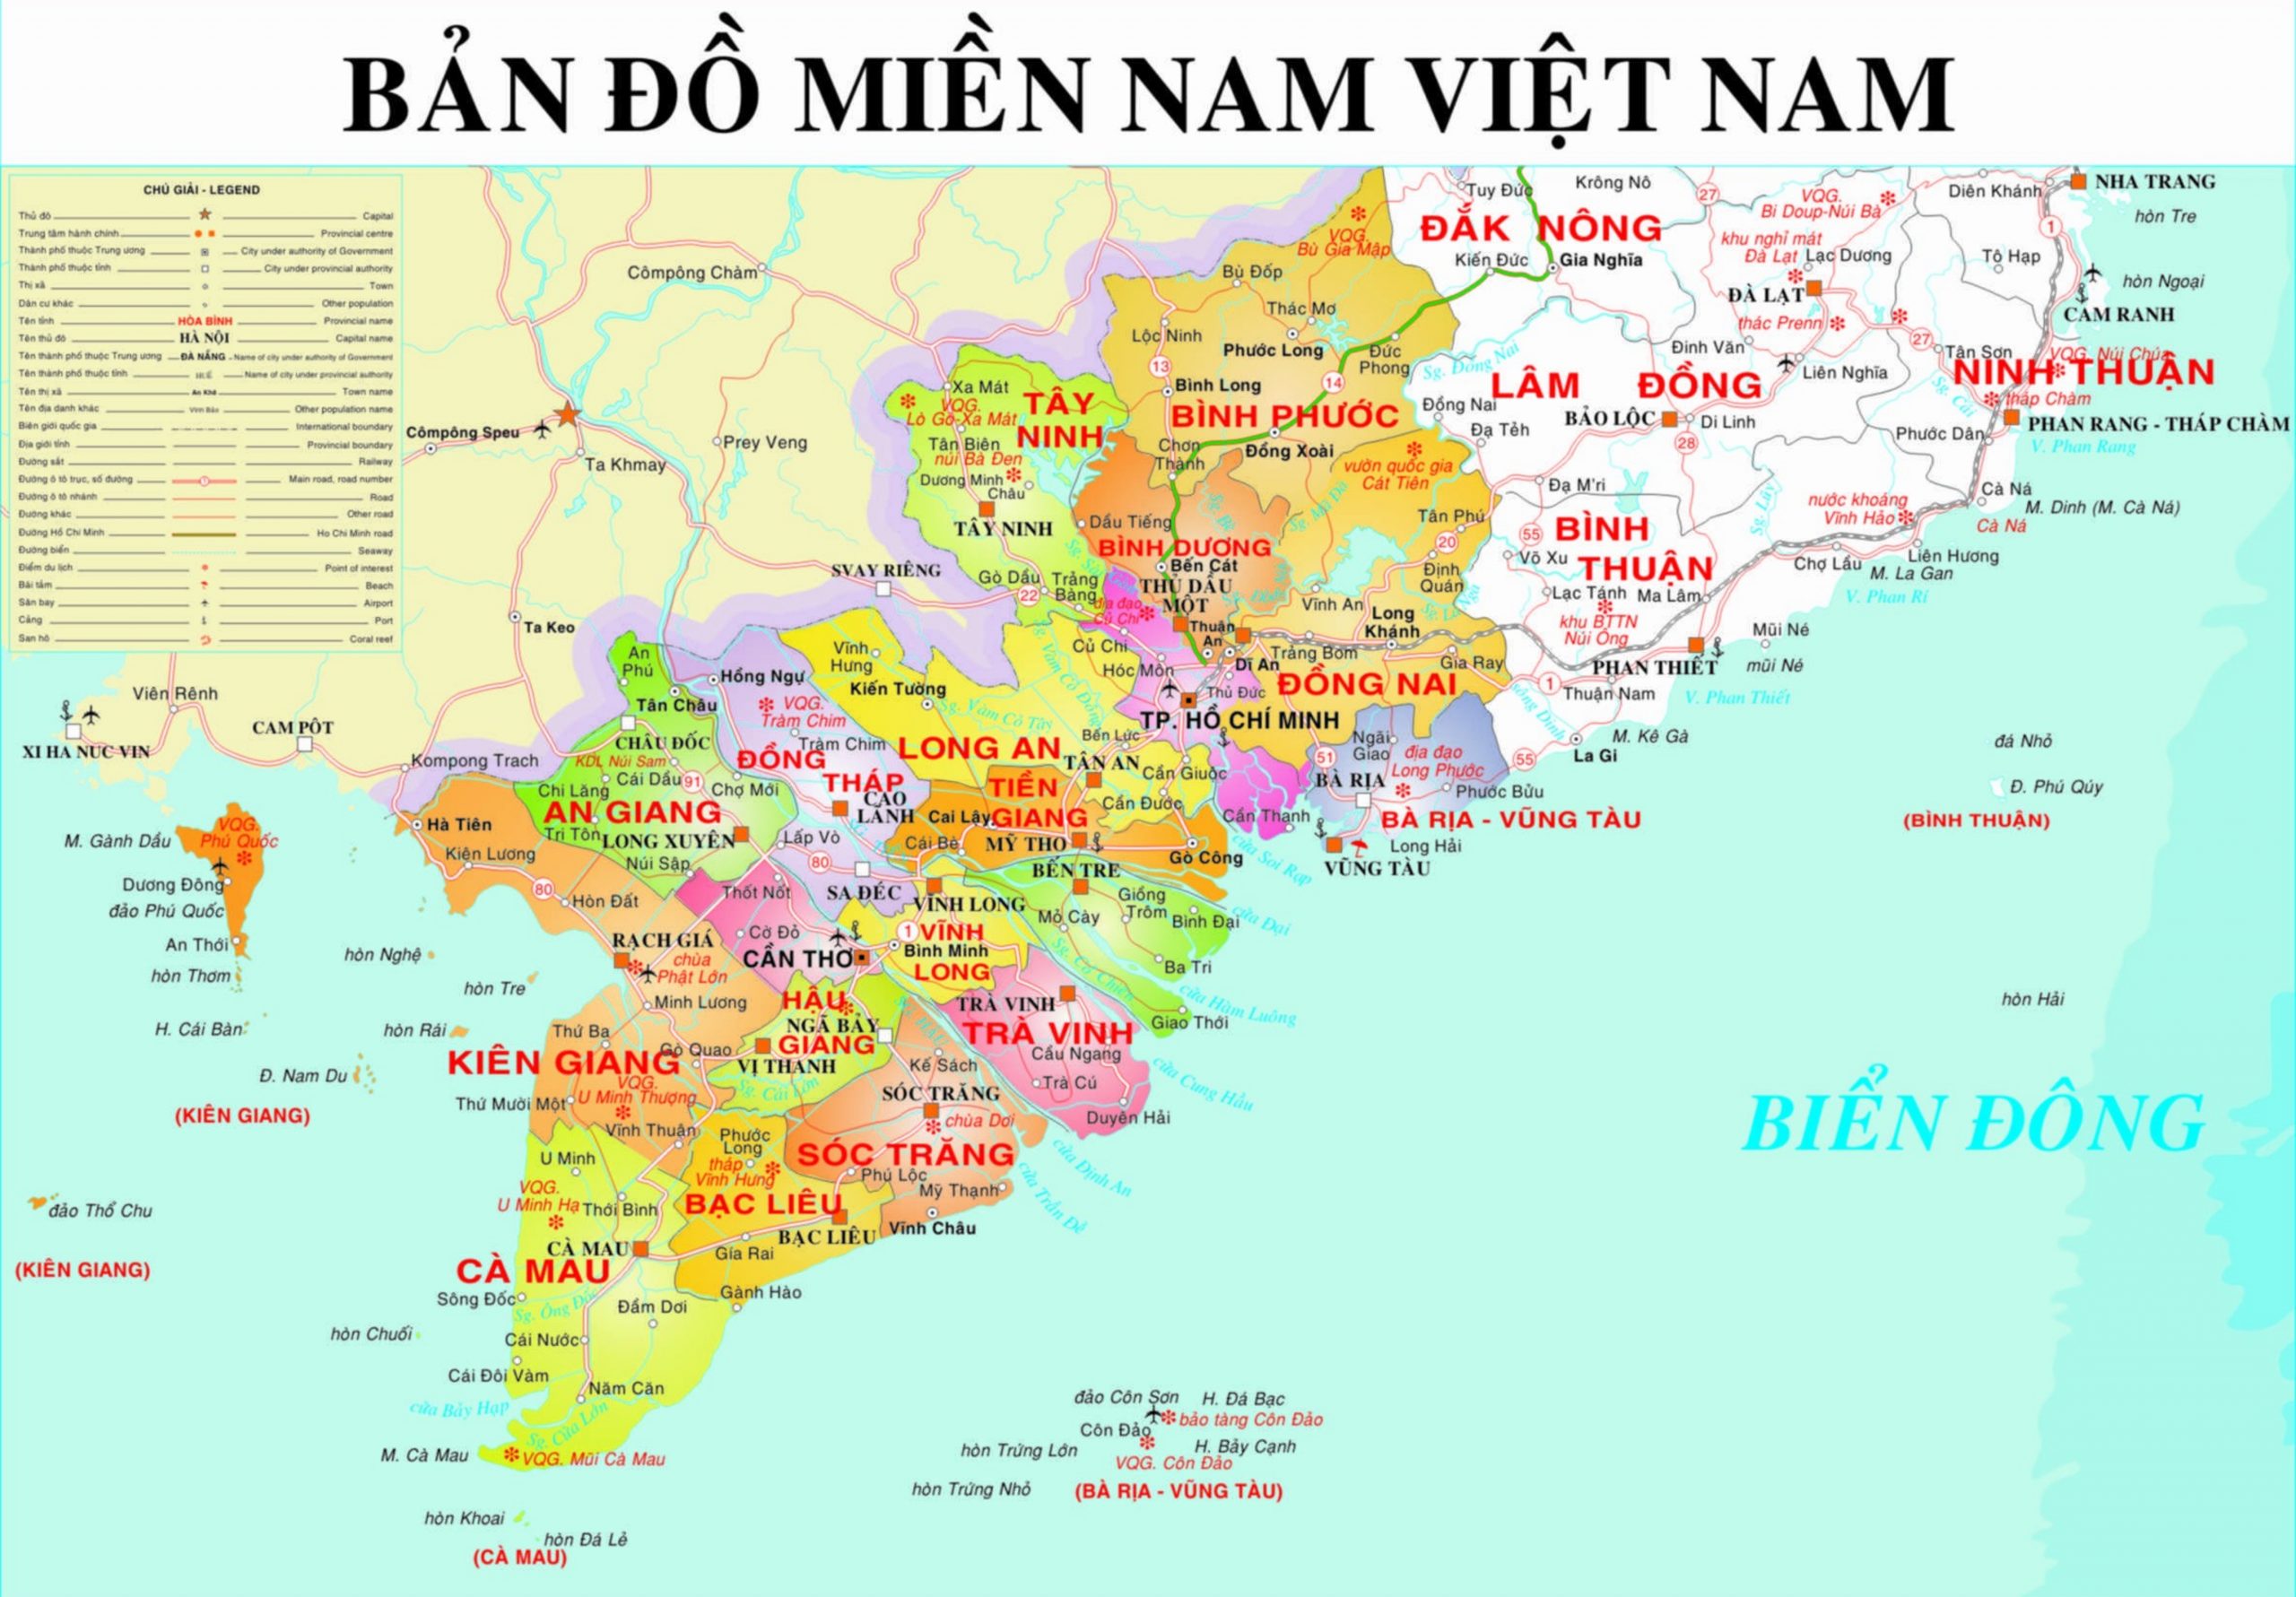 Bản đồ dùng miền Nam Việt Nam